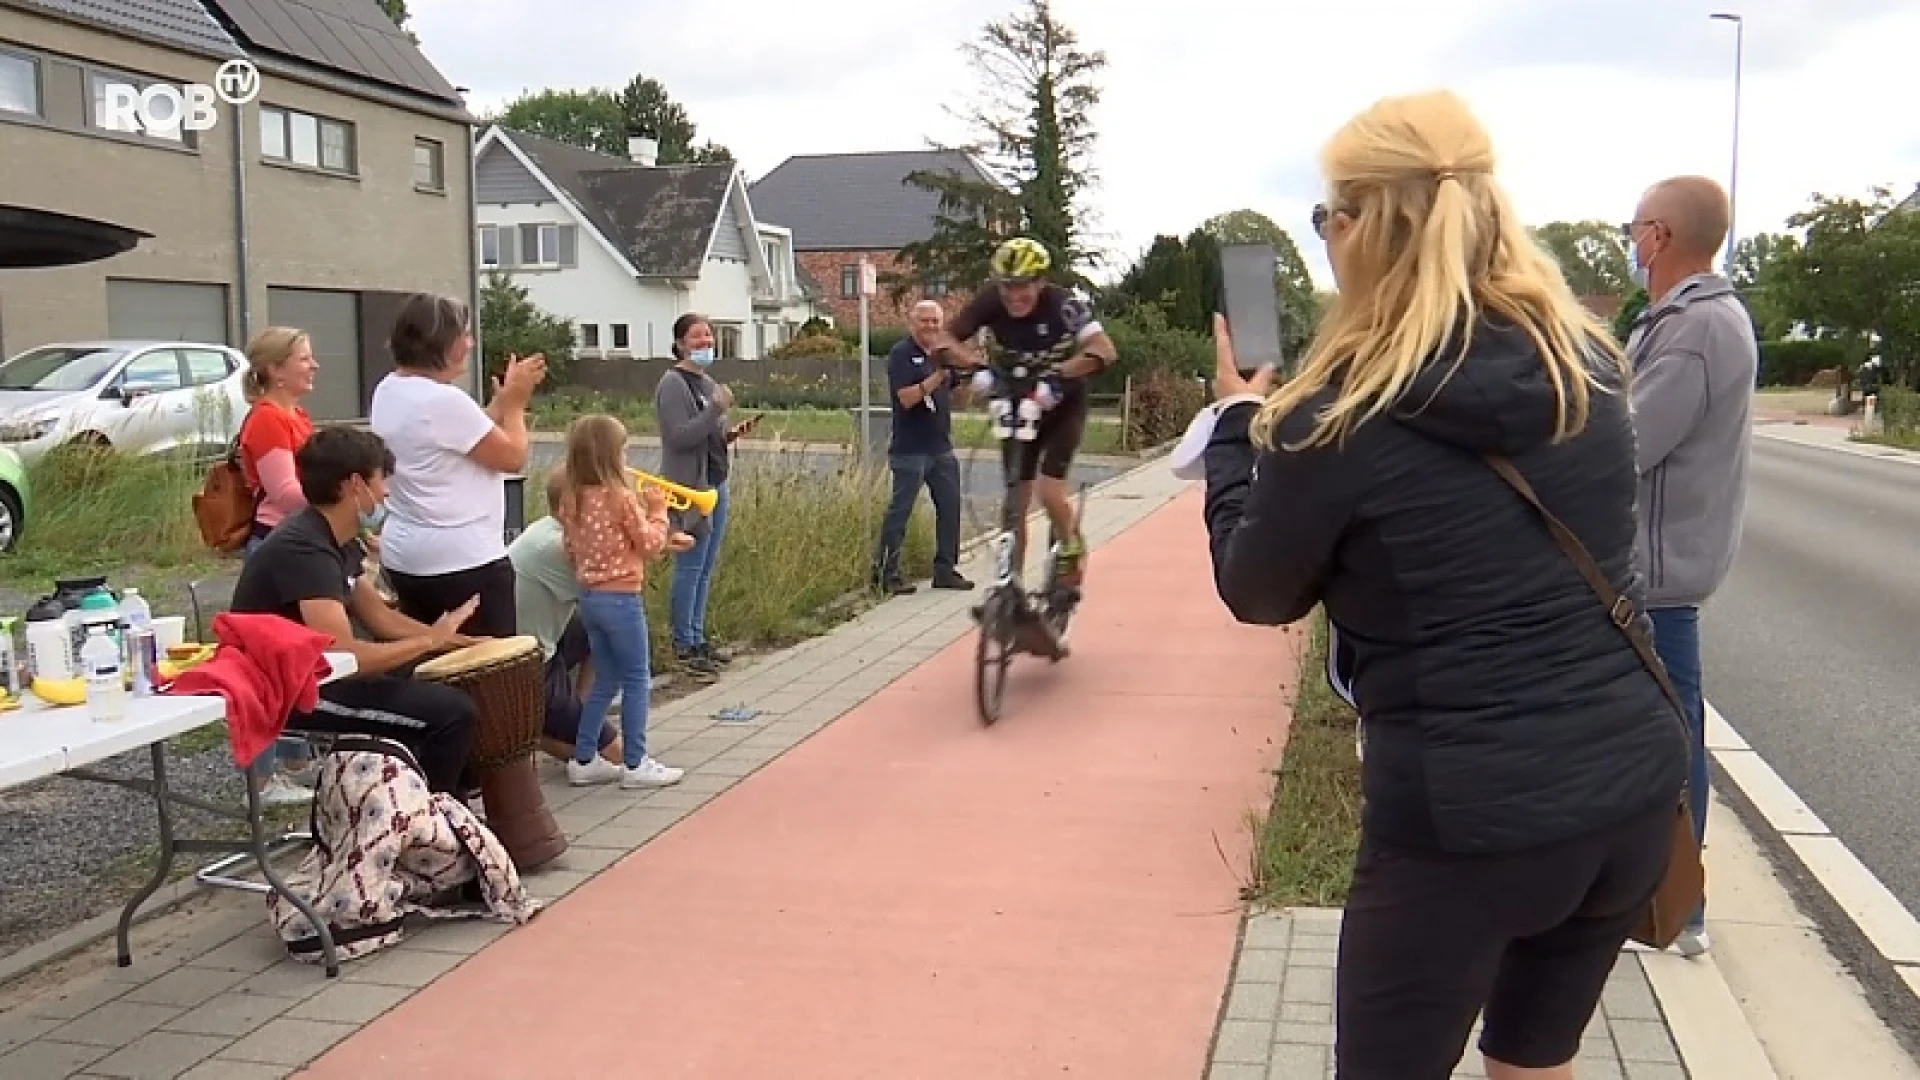 Geert De Mulder behaalt uniek wereldrecord op elliptische fiets in Haacht